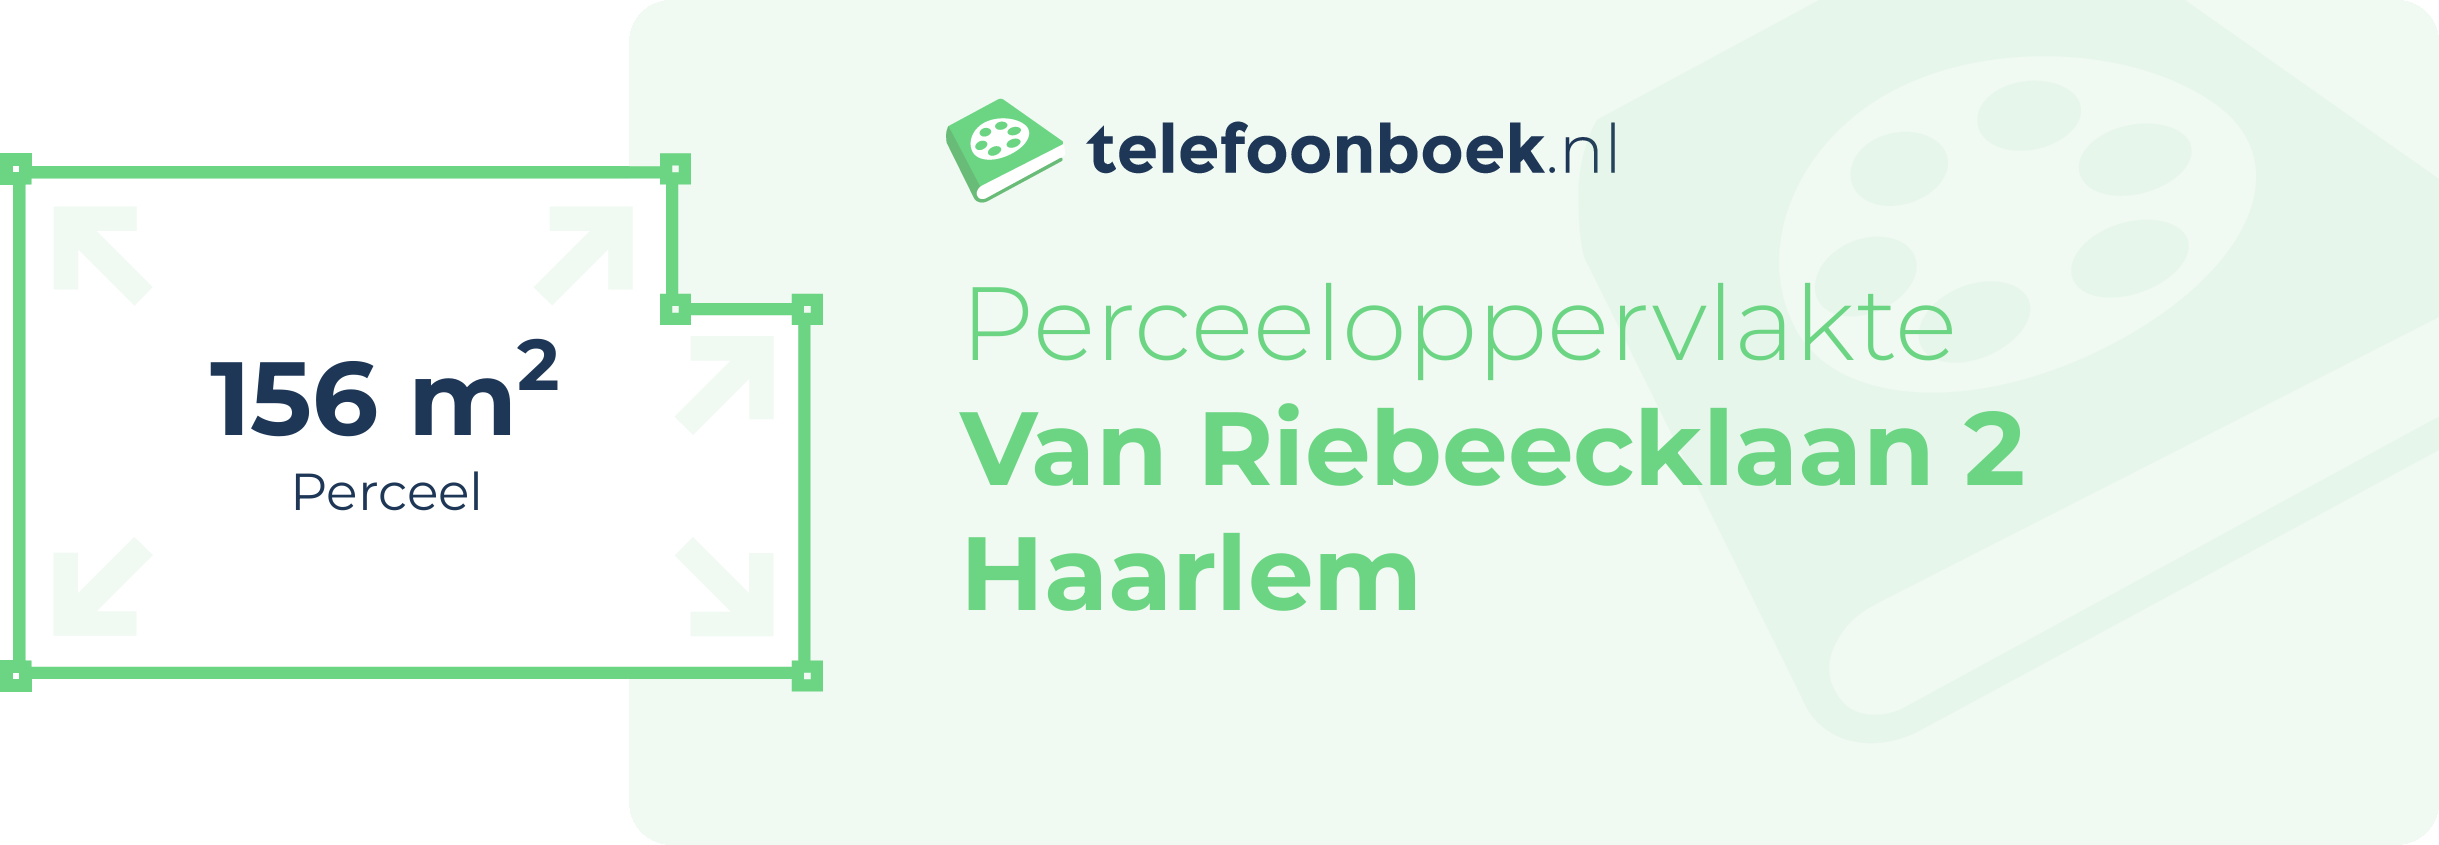 Perceeloppervlakte Van Riebeecklaan 2 Haarlem